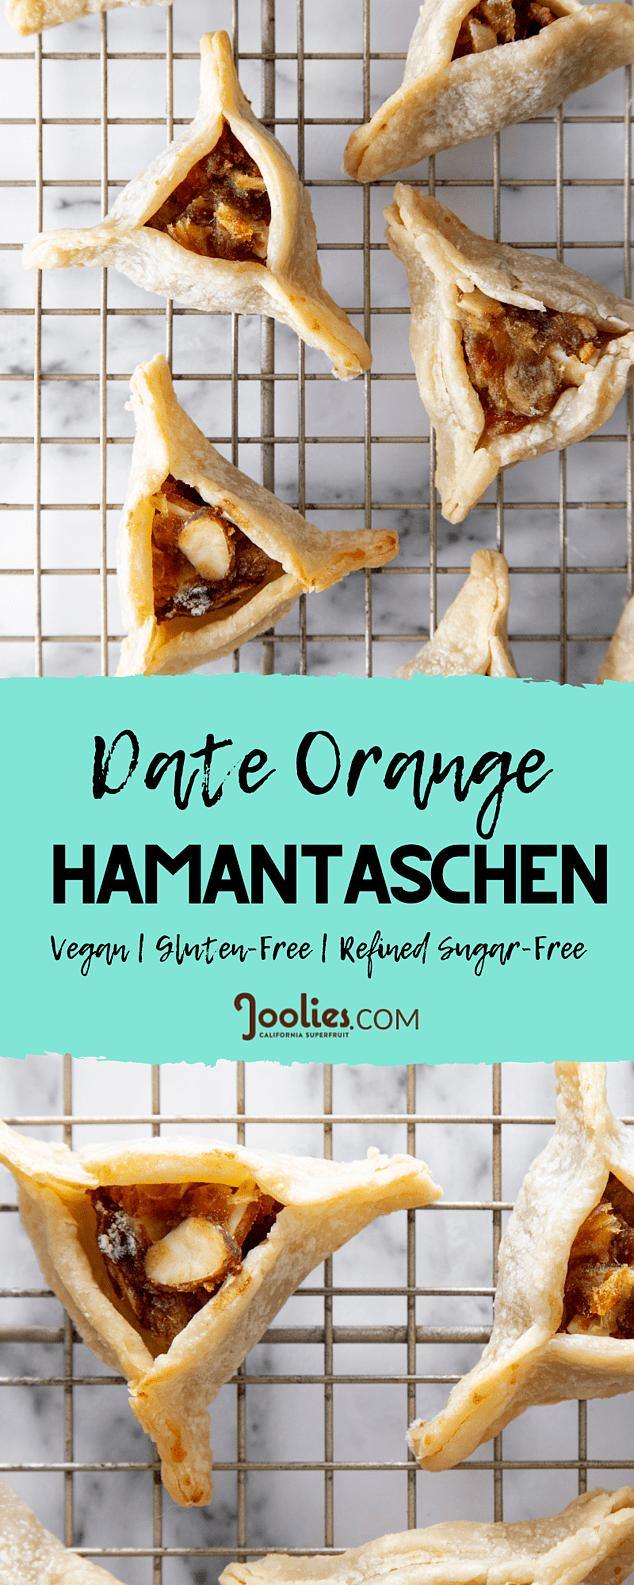 Date Orange Hamantaschen